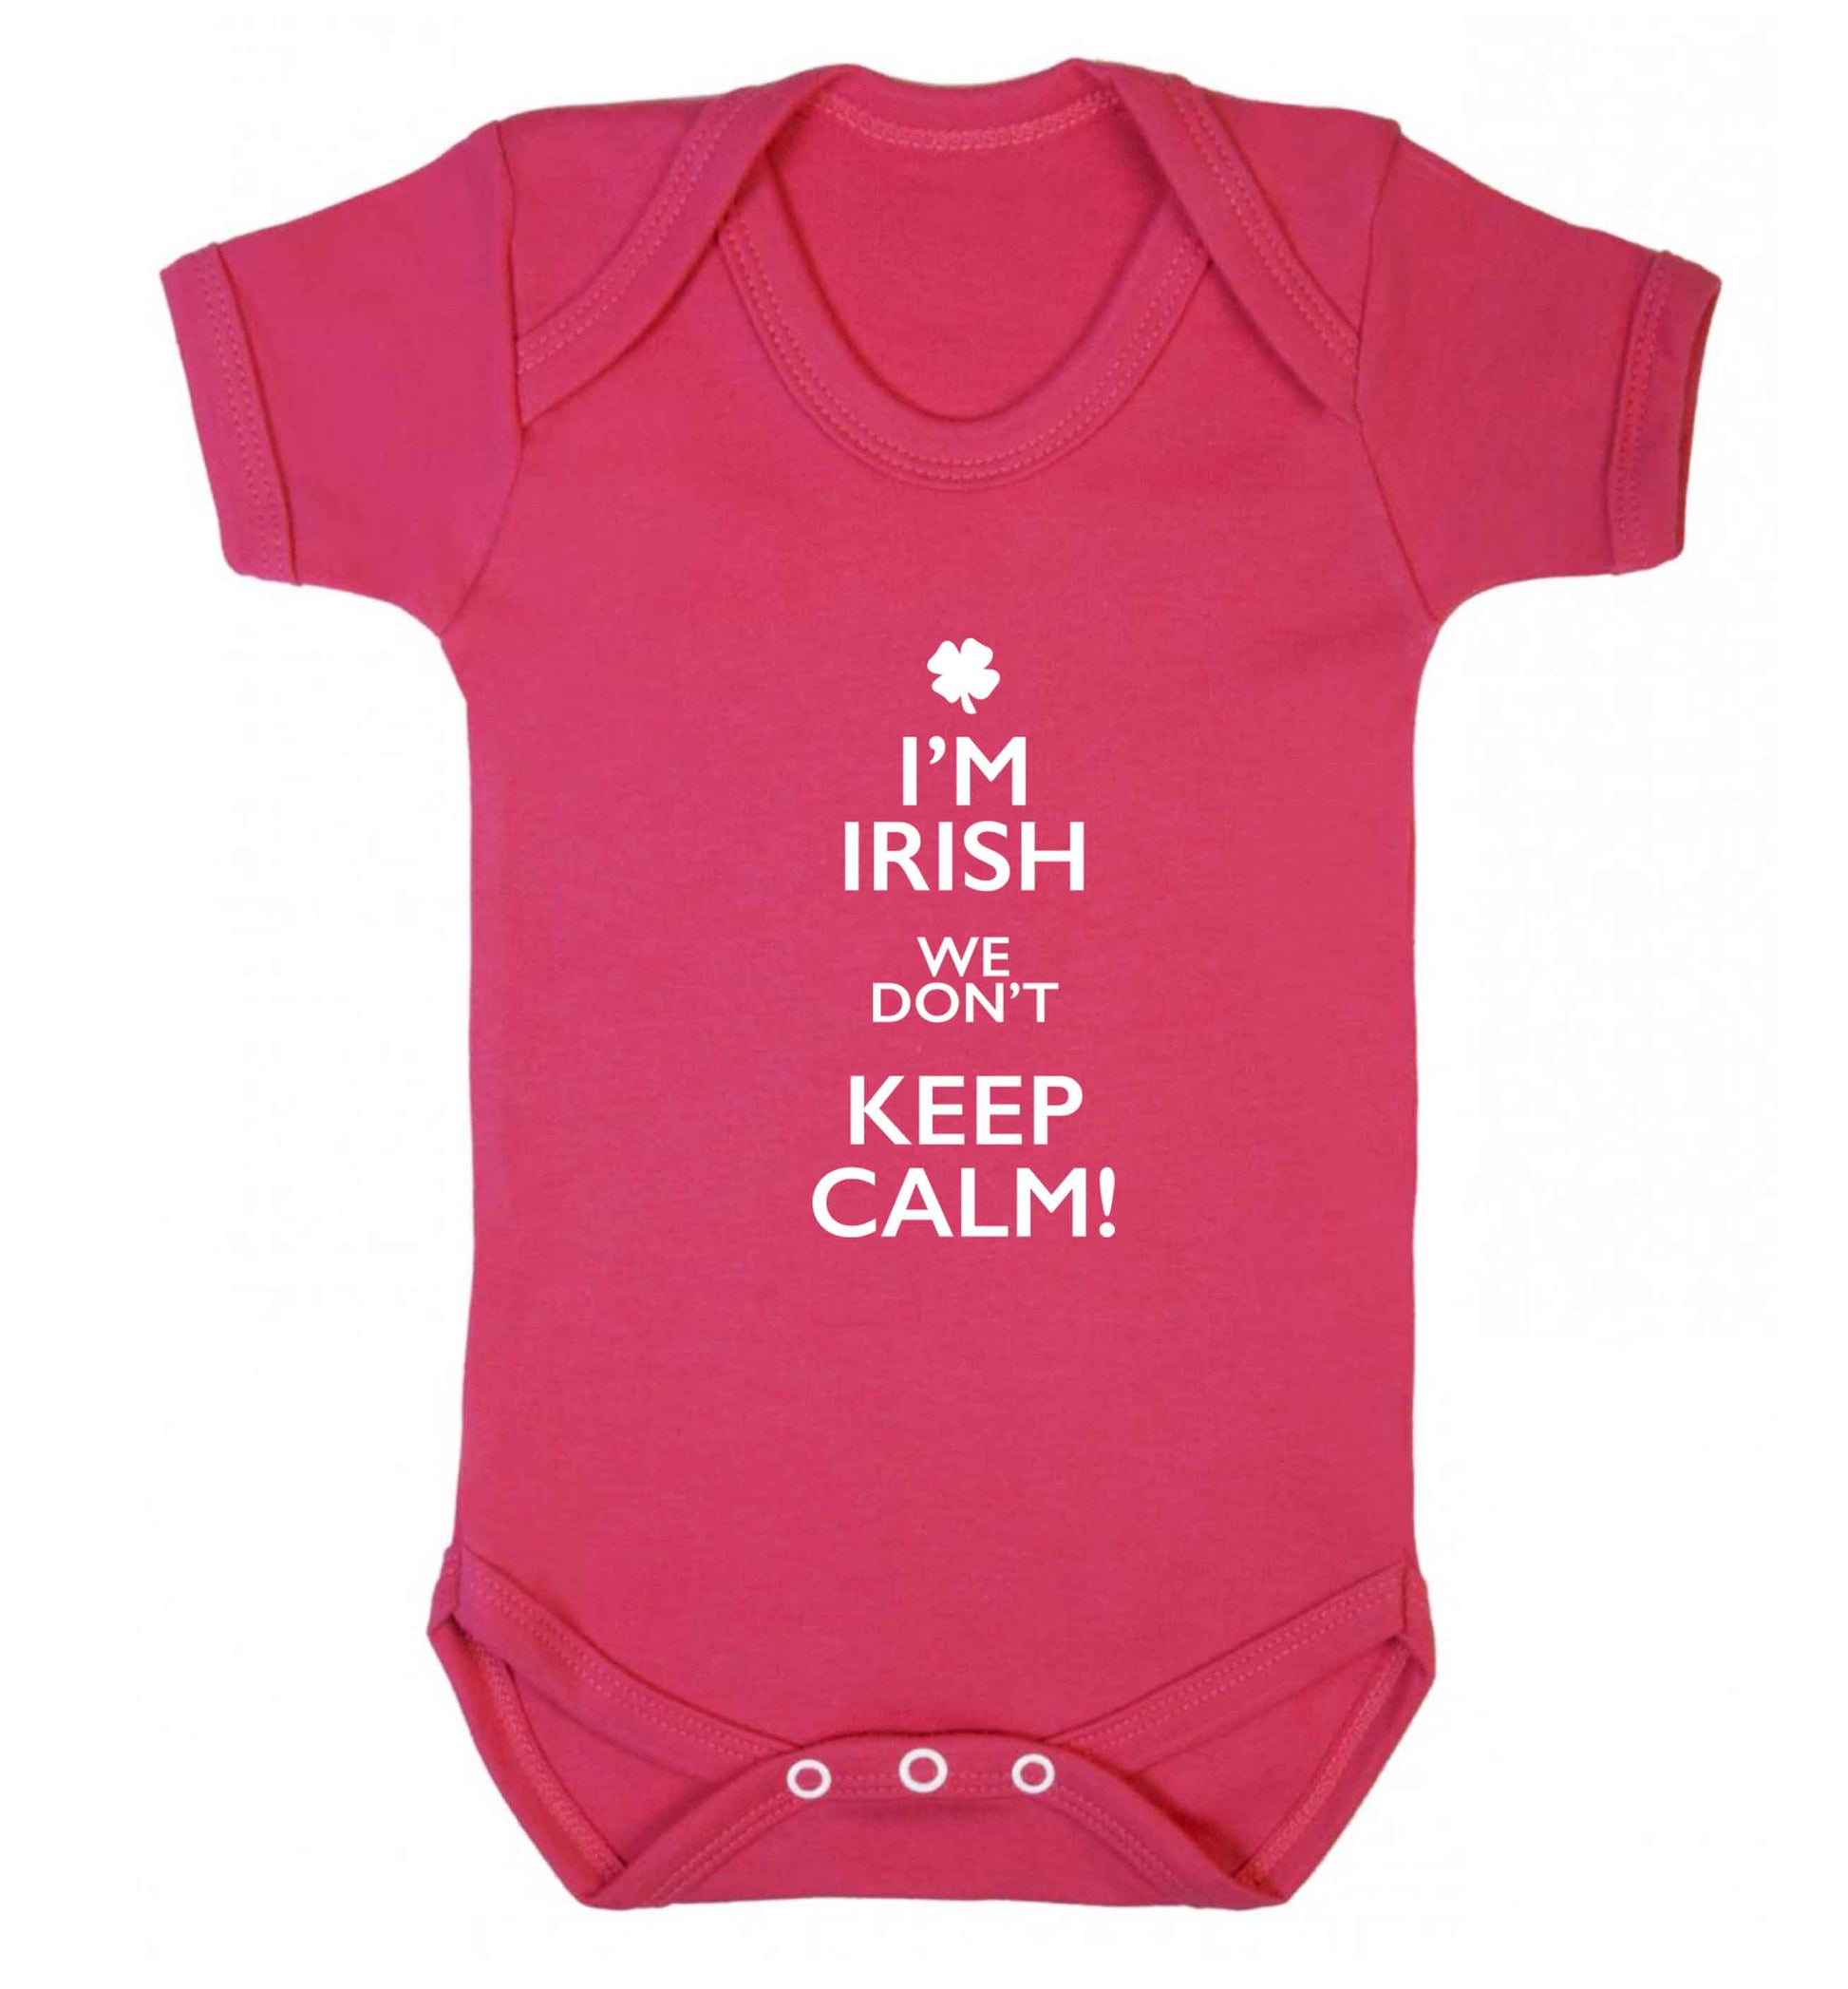 I'm Irish we don't keep calm baby vest dark pink 18-24 months